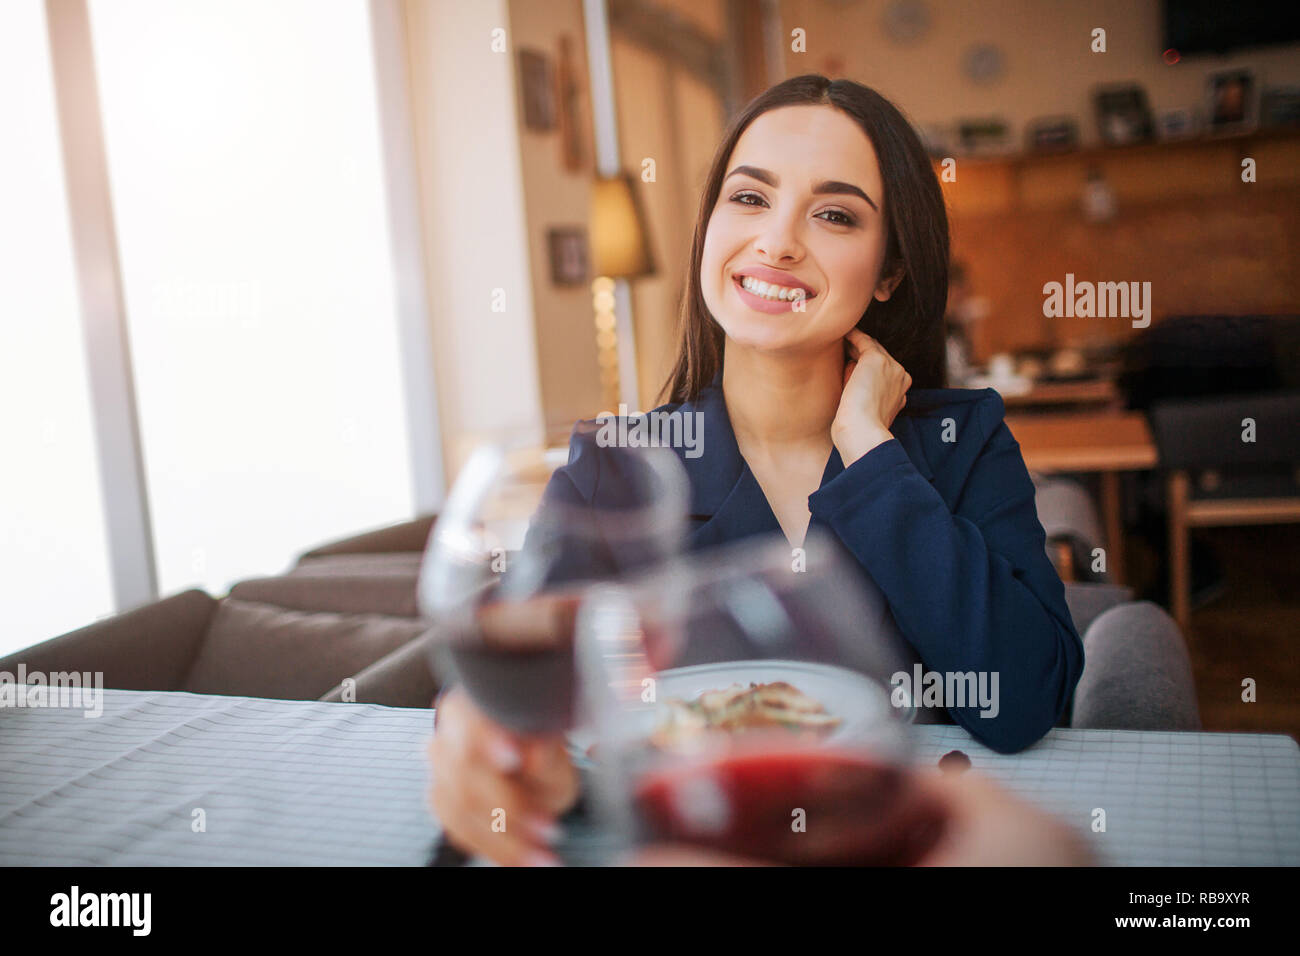 Cheerful yougn femme maintenir le verre de vin rouge et le toucher avec un autre. Elle sourire et regarder droit devant Banque D'Images